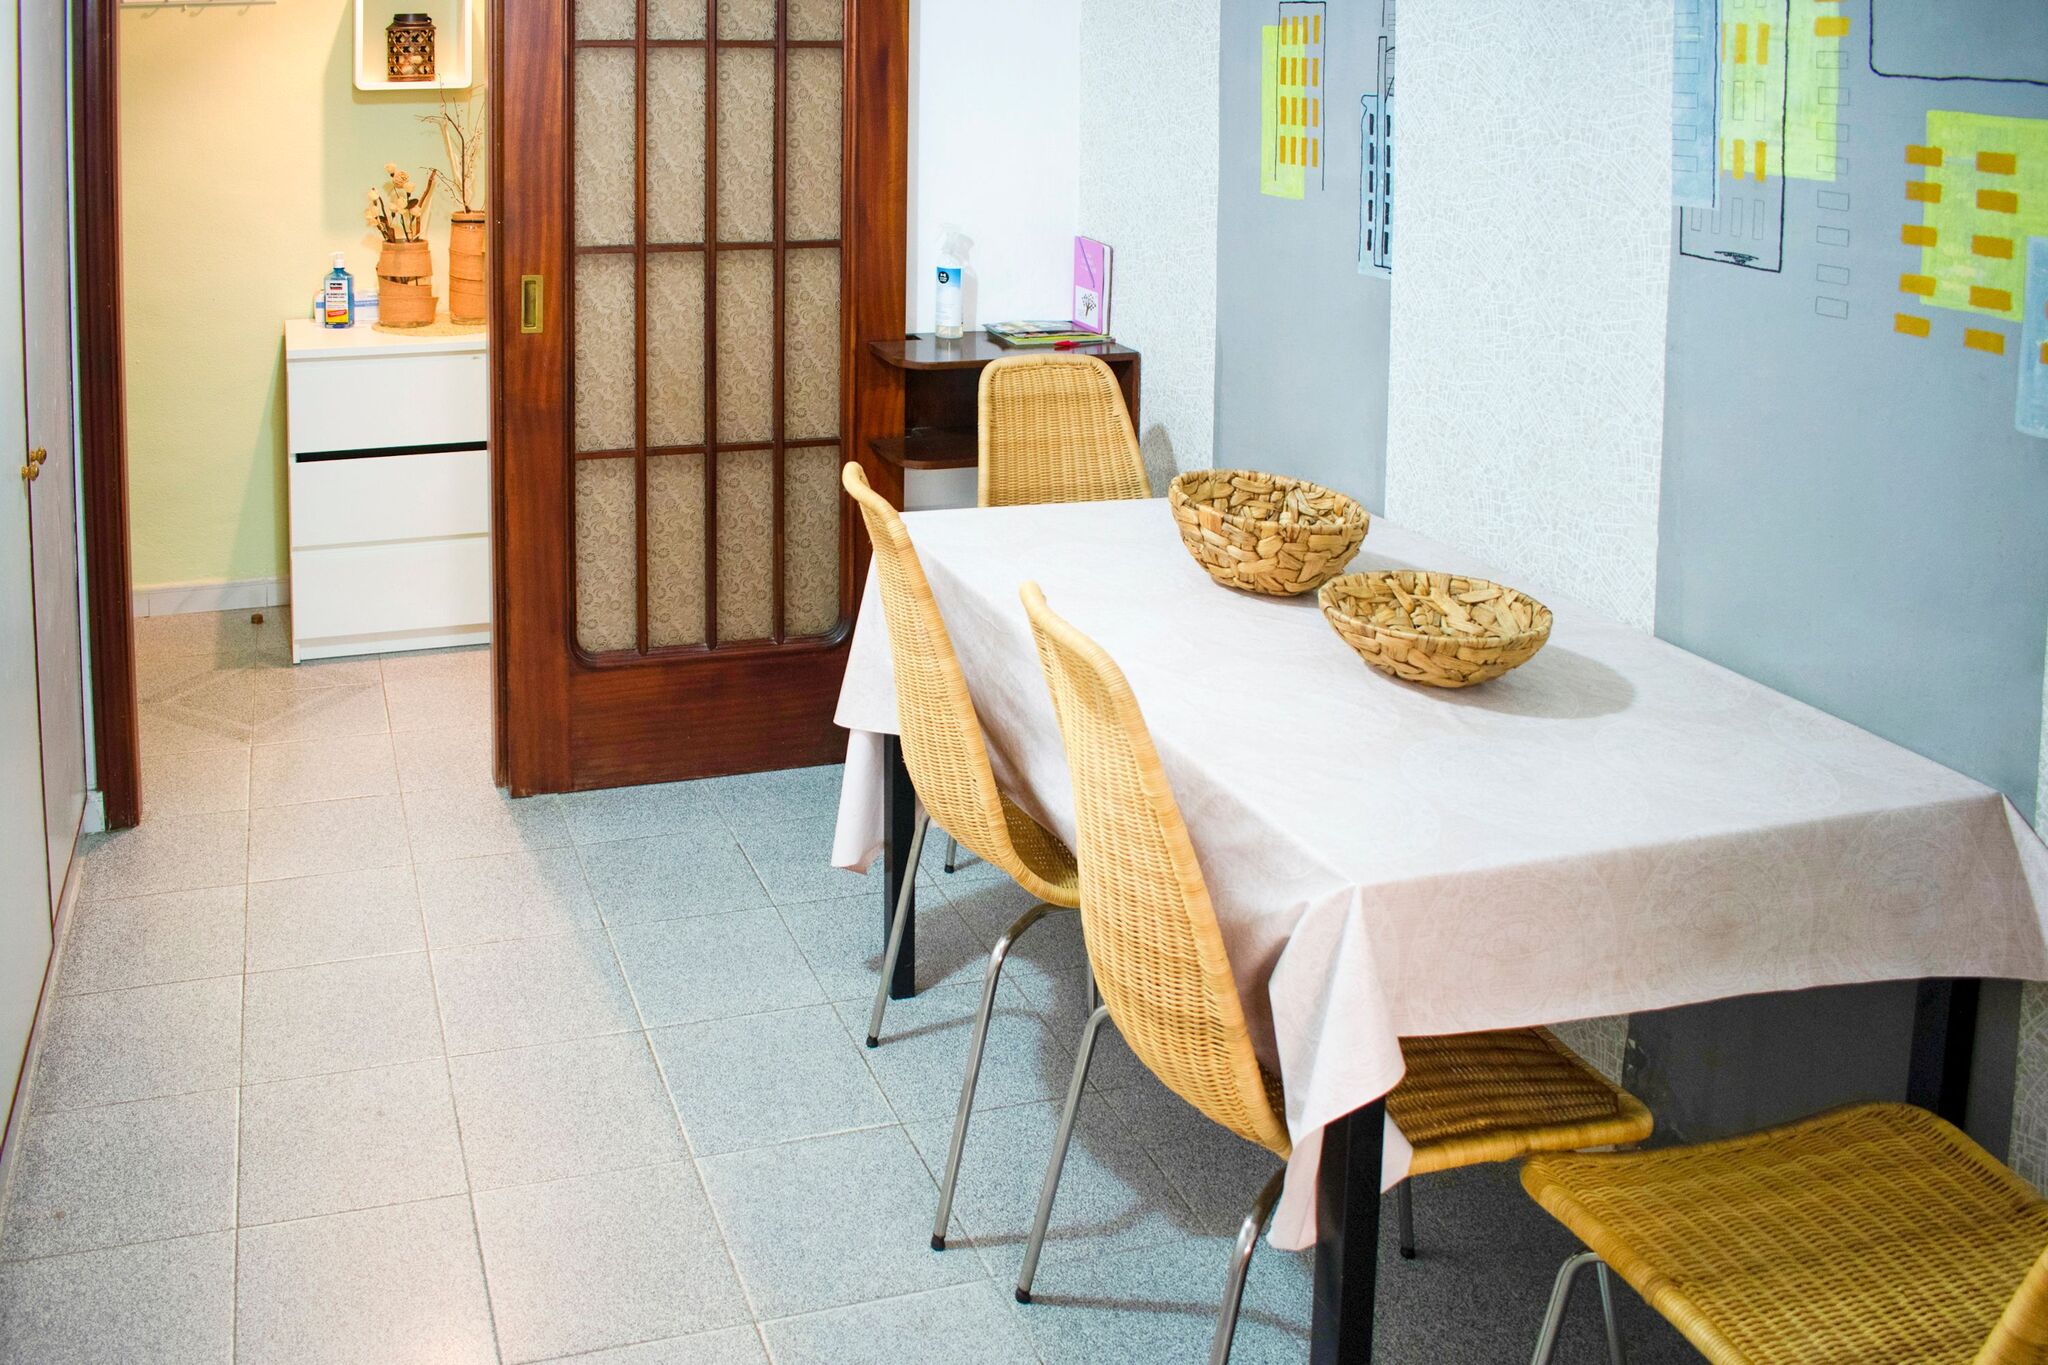 Traditional Apartment in Costa de la Luz near Centre